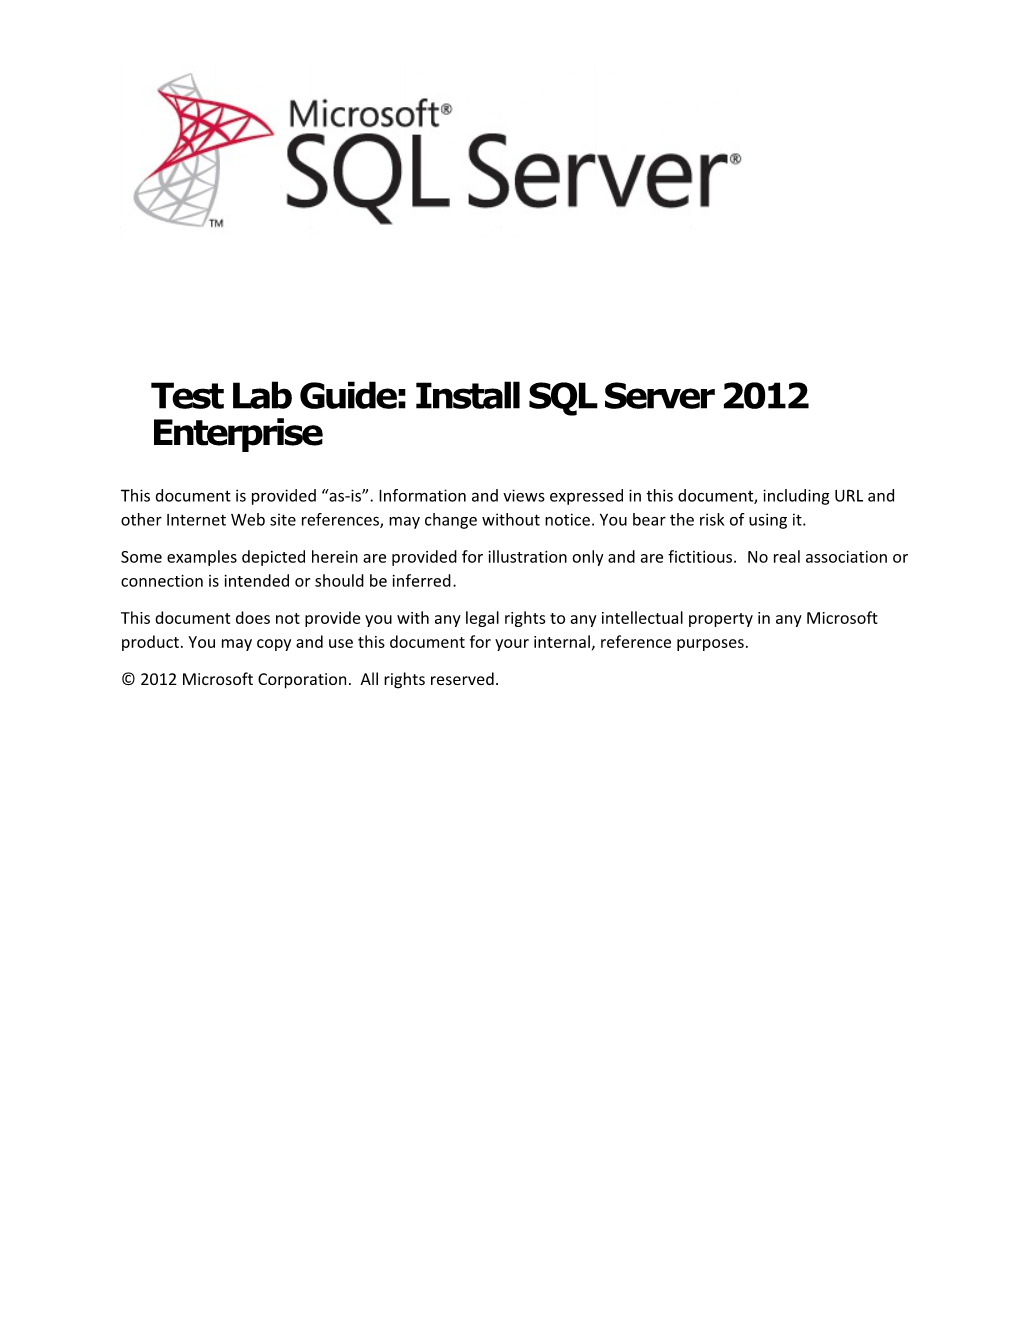 Test Lab Guide: Install SQL Server 2012 Enterprise